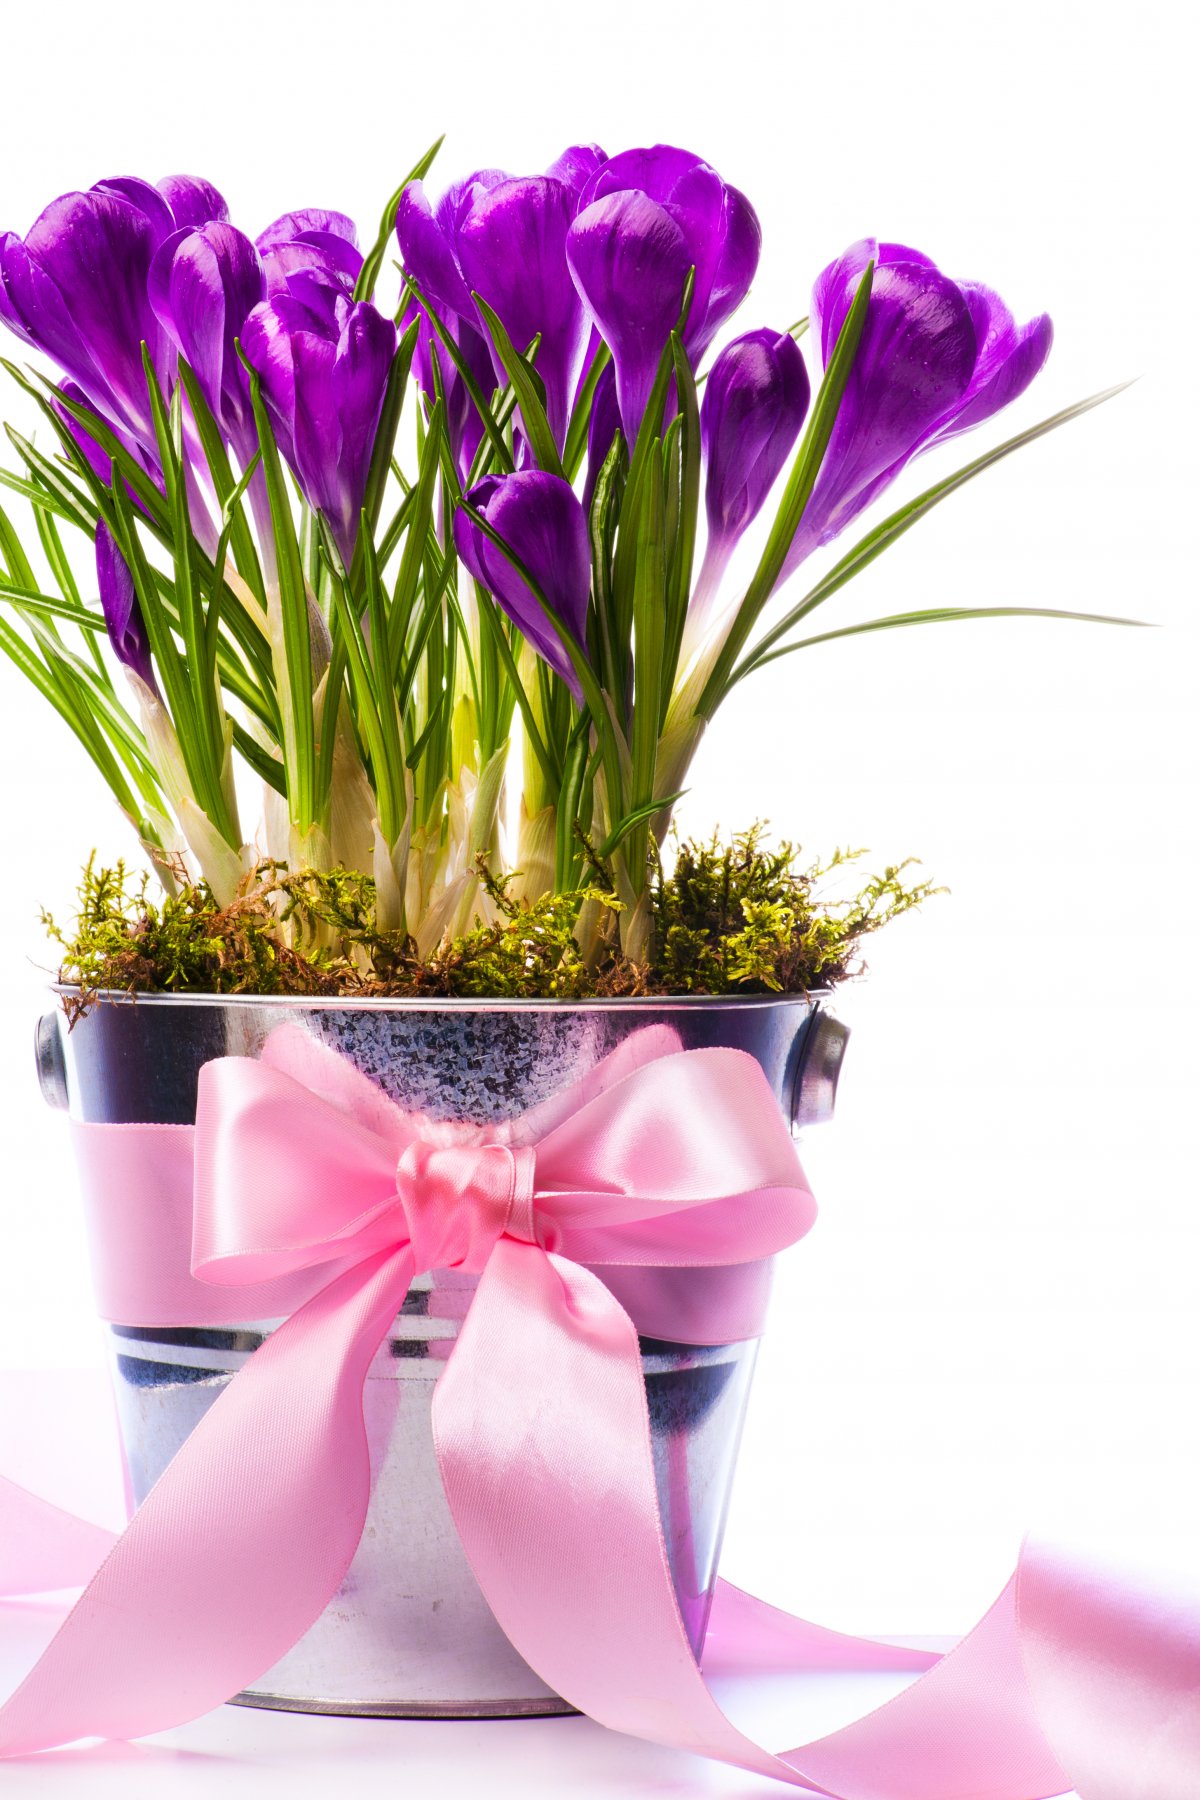 紫色水仙花图片下载 高清图片